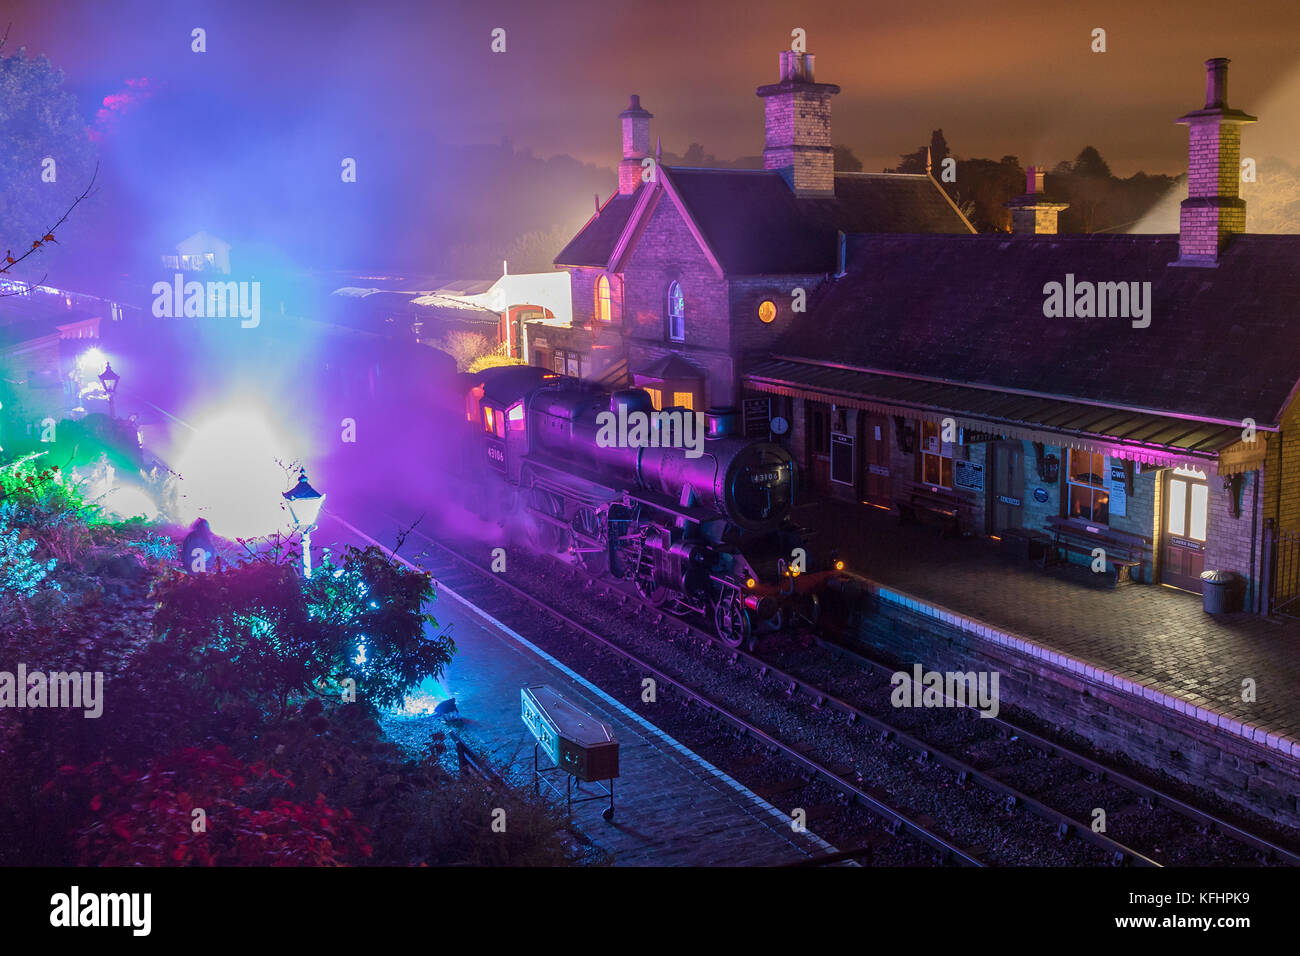 Die Severn Valley Railway ist eine beliebte Touristenattraktion in Shropshire und bietet saisonale Halloween-Specials. Nach einer Fahrt mit der Severn Valley Railway kommt ein Geisterzug mit Dampfzug am Bahnhof Arley an. Für drei Nächte können die Nachtschwärmer eine Fahrt mit dem Licht aus dem Dampf in der gruseligen Dunkelheit genießen, die durch halloween gekleidete Stationen auf dem Weg zur Arley Station bei Bewdley führt, wo spezielle Beleuchtung, Rauch und Schauspieler das volle Spukbahnhofserlebnis schufen. Erhaltene Ivatt-Dampfmaschine der Klasse 4 2-6-0 43106, 'Flying Pig', wird von Arley zur Rückfahrt nach Kidderminster abfahren. Stockfoto